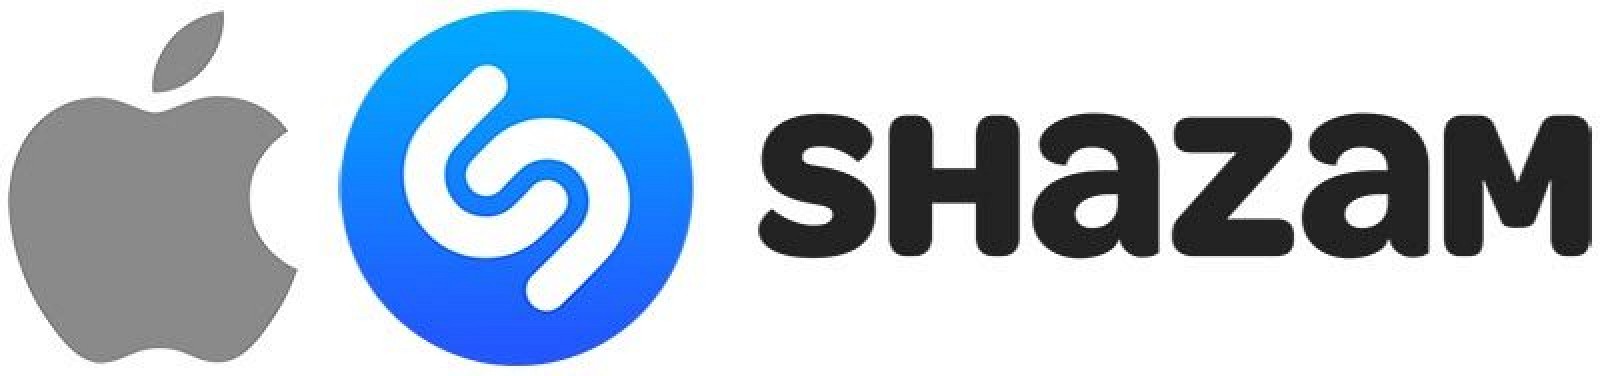 photo of Apple Acquires Shazam image